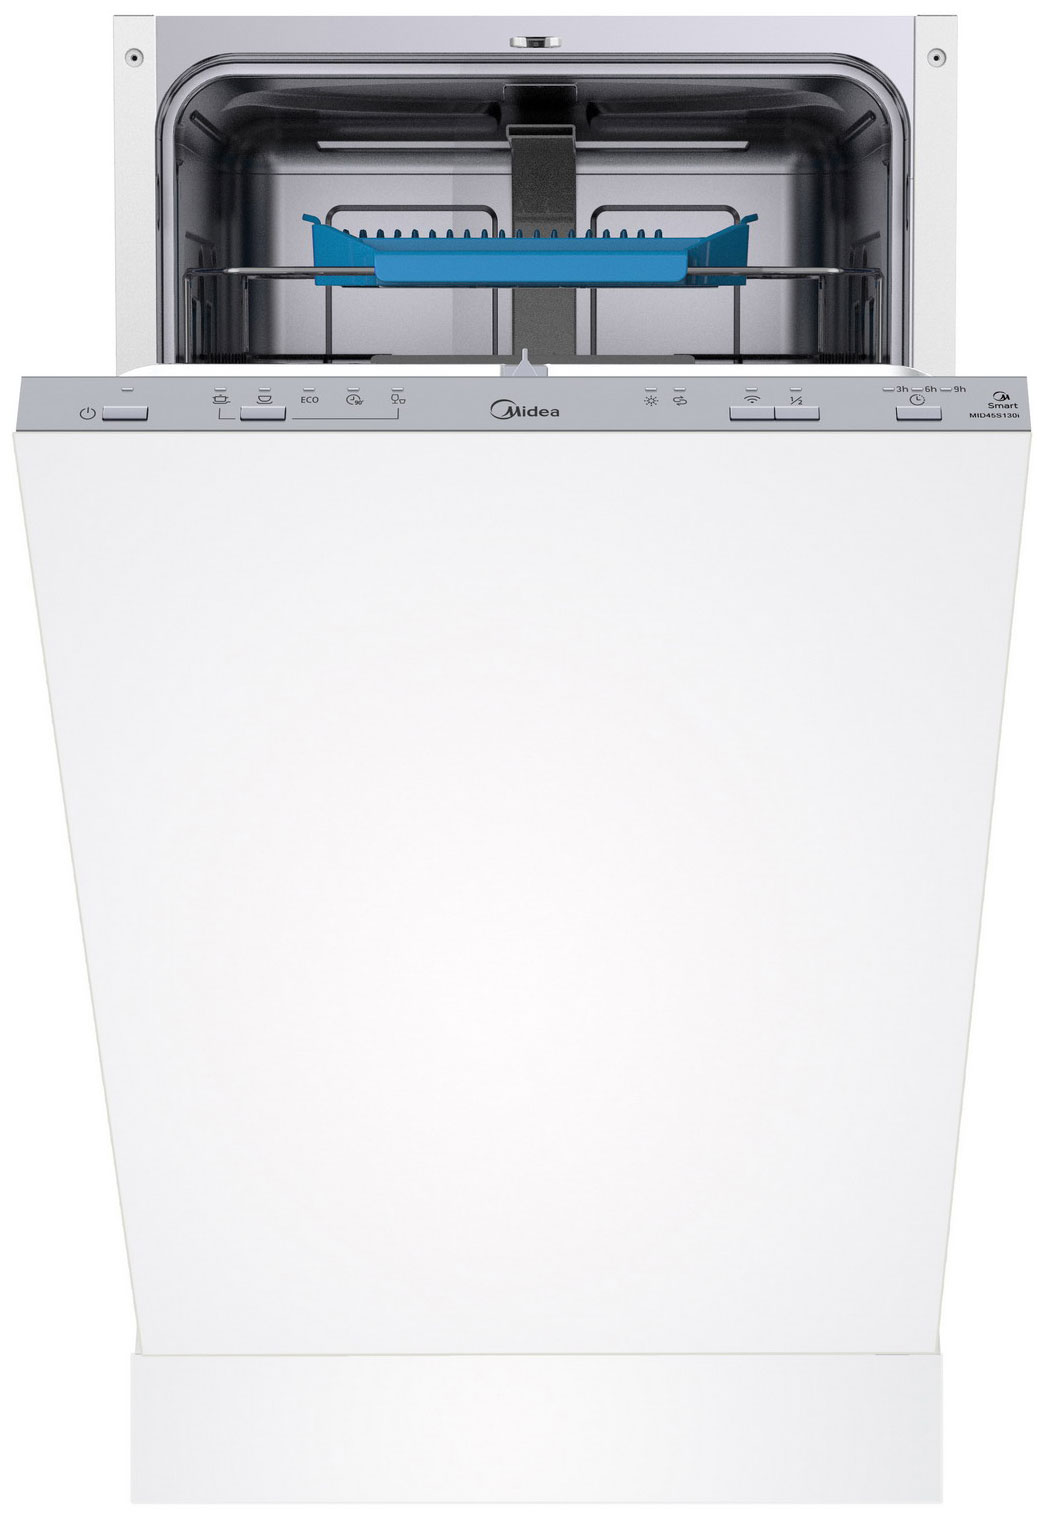 Встраиваемая посудомоечная машина Midea MID45S130i встраиваемая посудомоечная машина midea mid60s350i